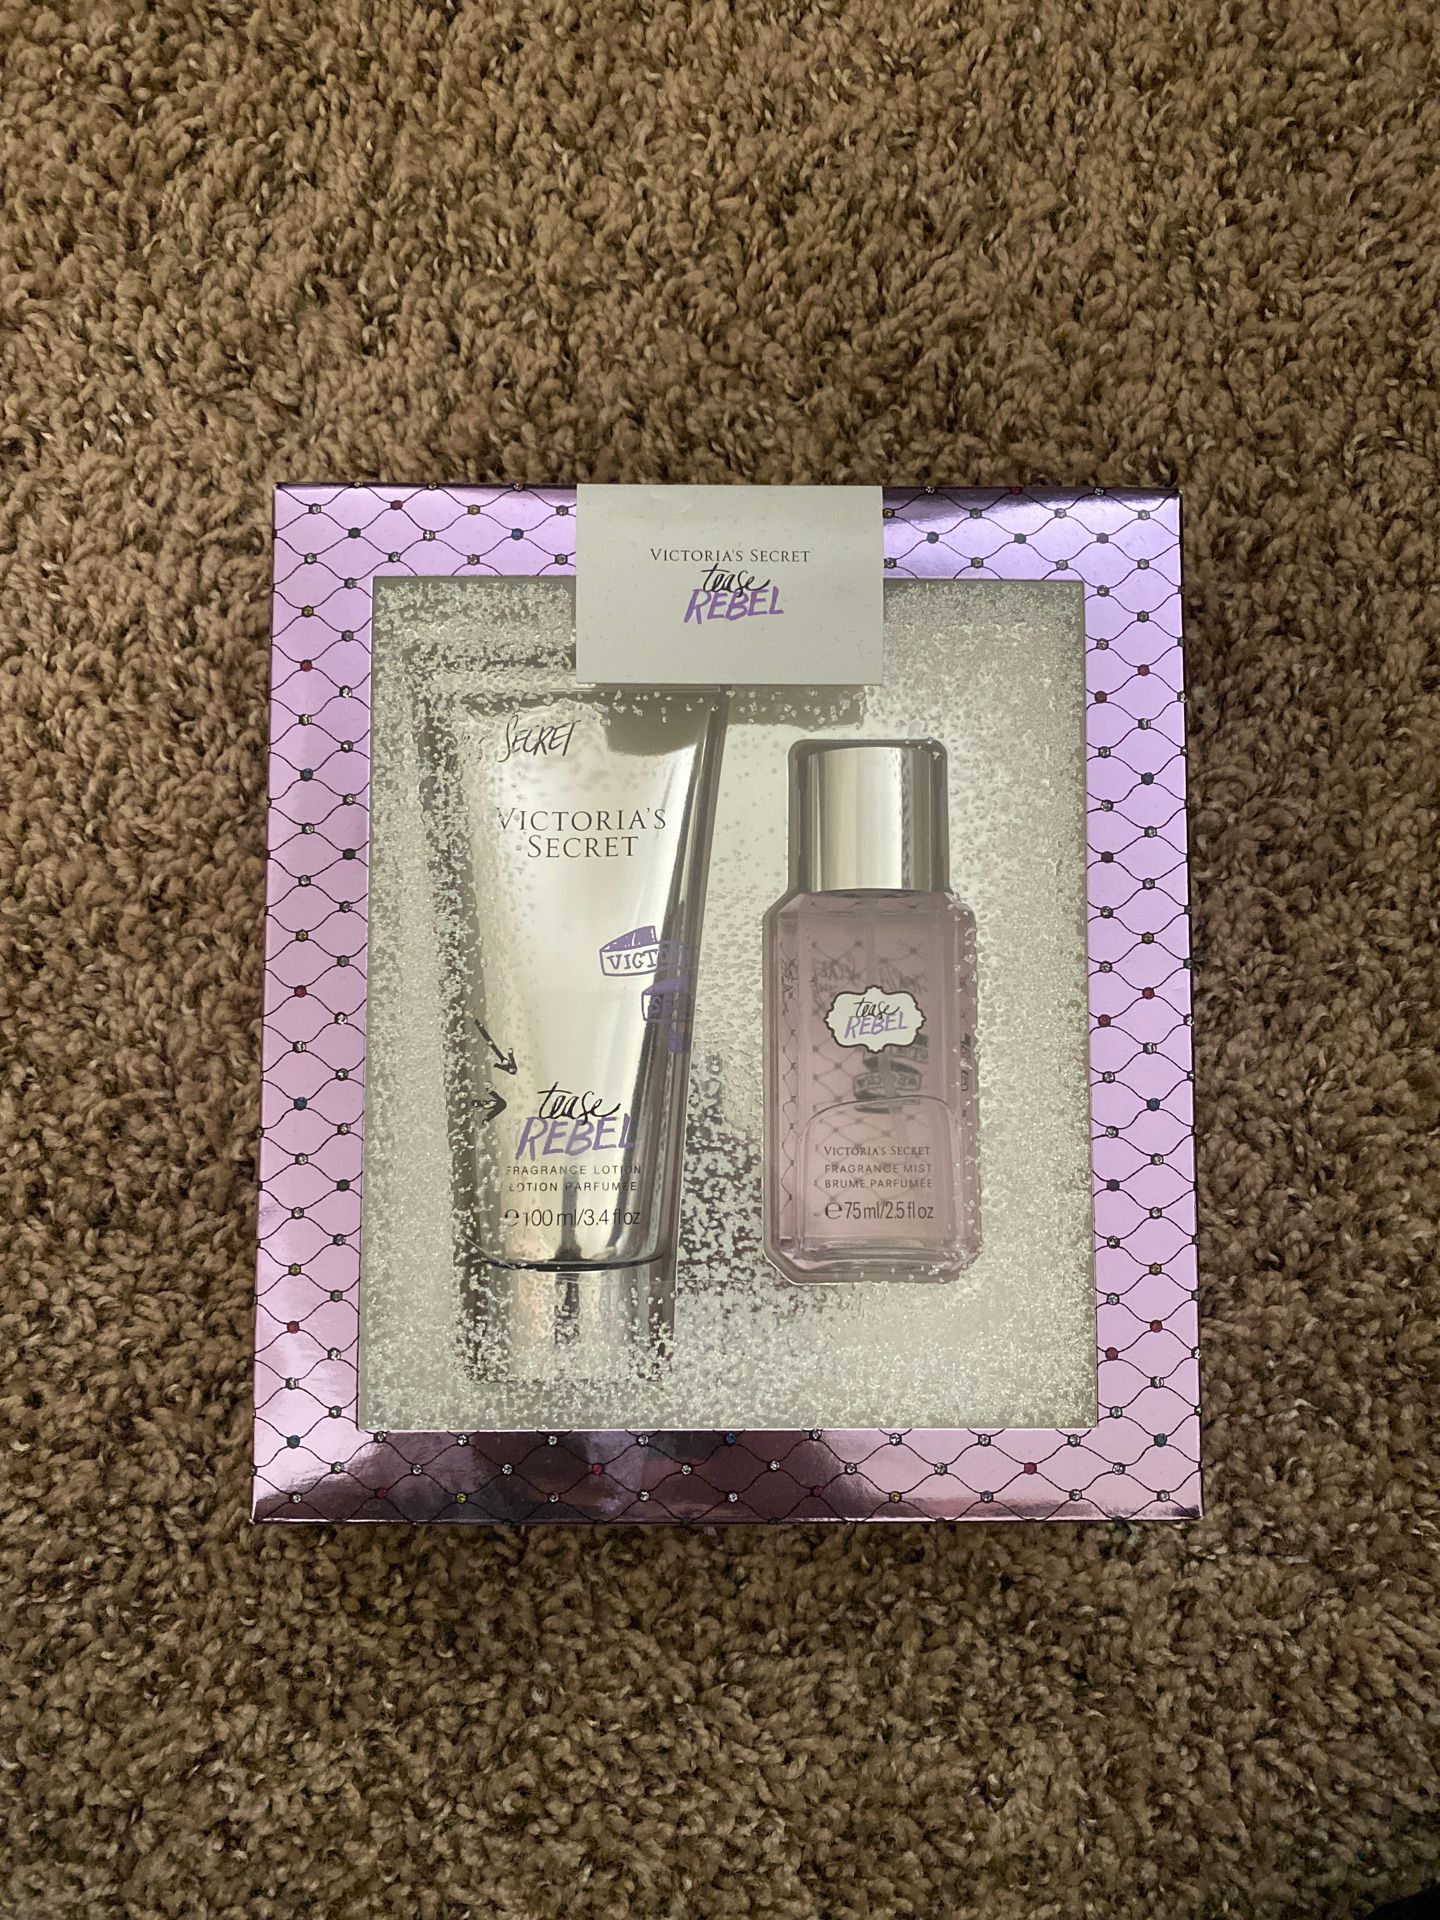 Victoria’s Secret gift set